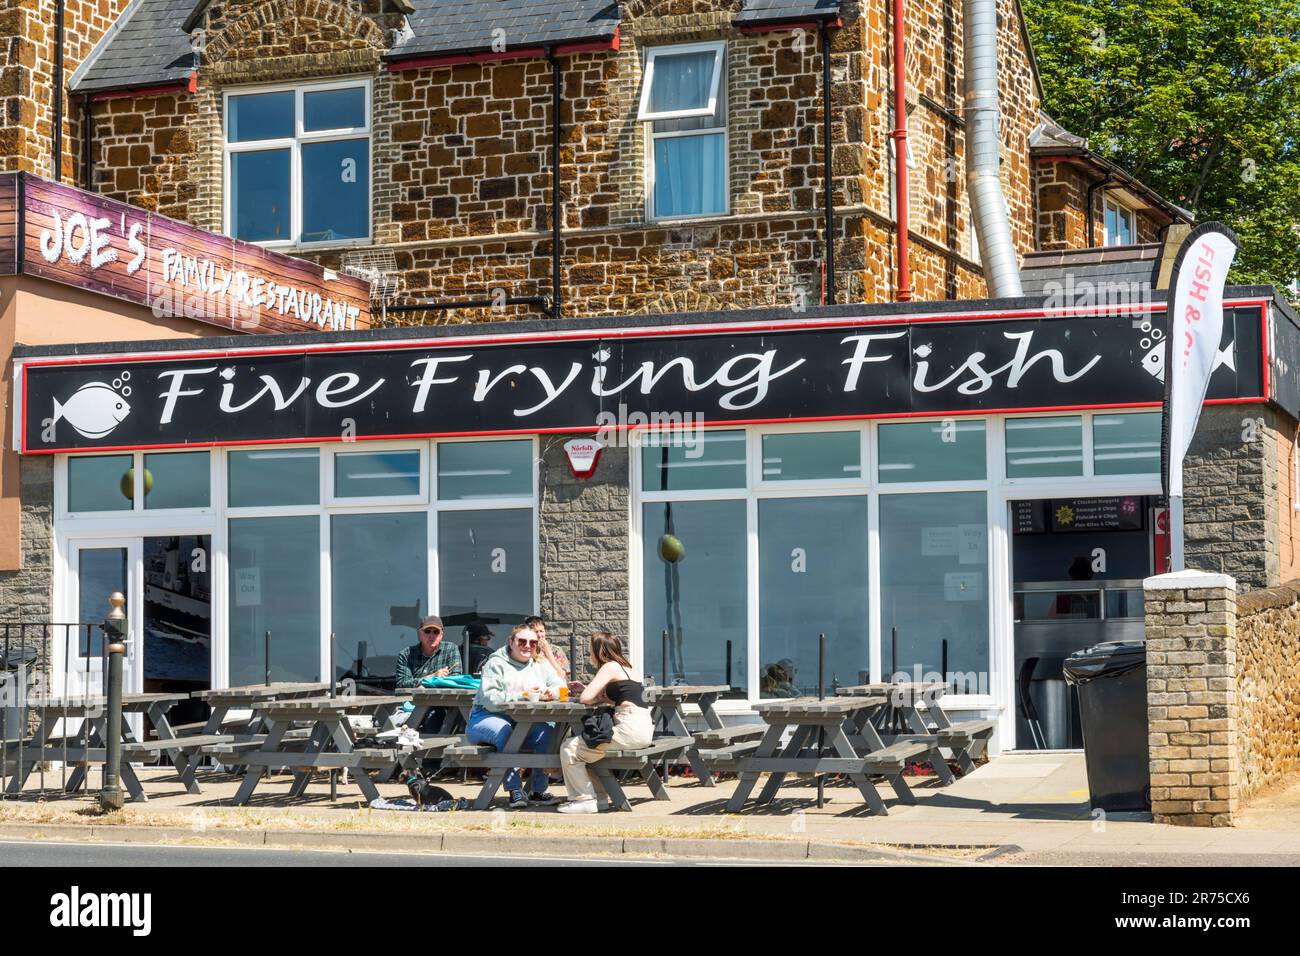 Five Frying Fish fish restaurant in Hunstanton, Norfolk. Stock Photo